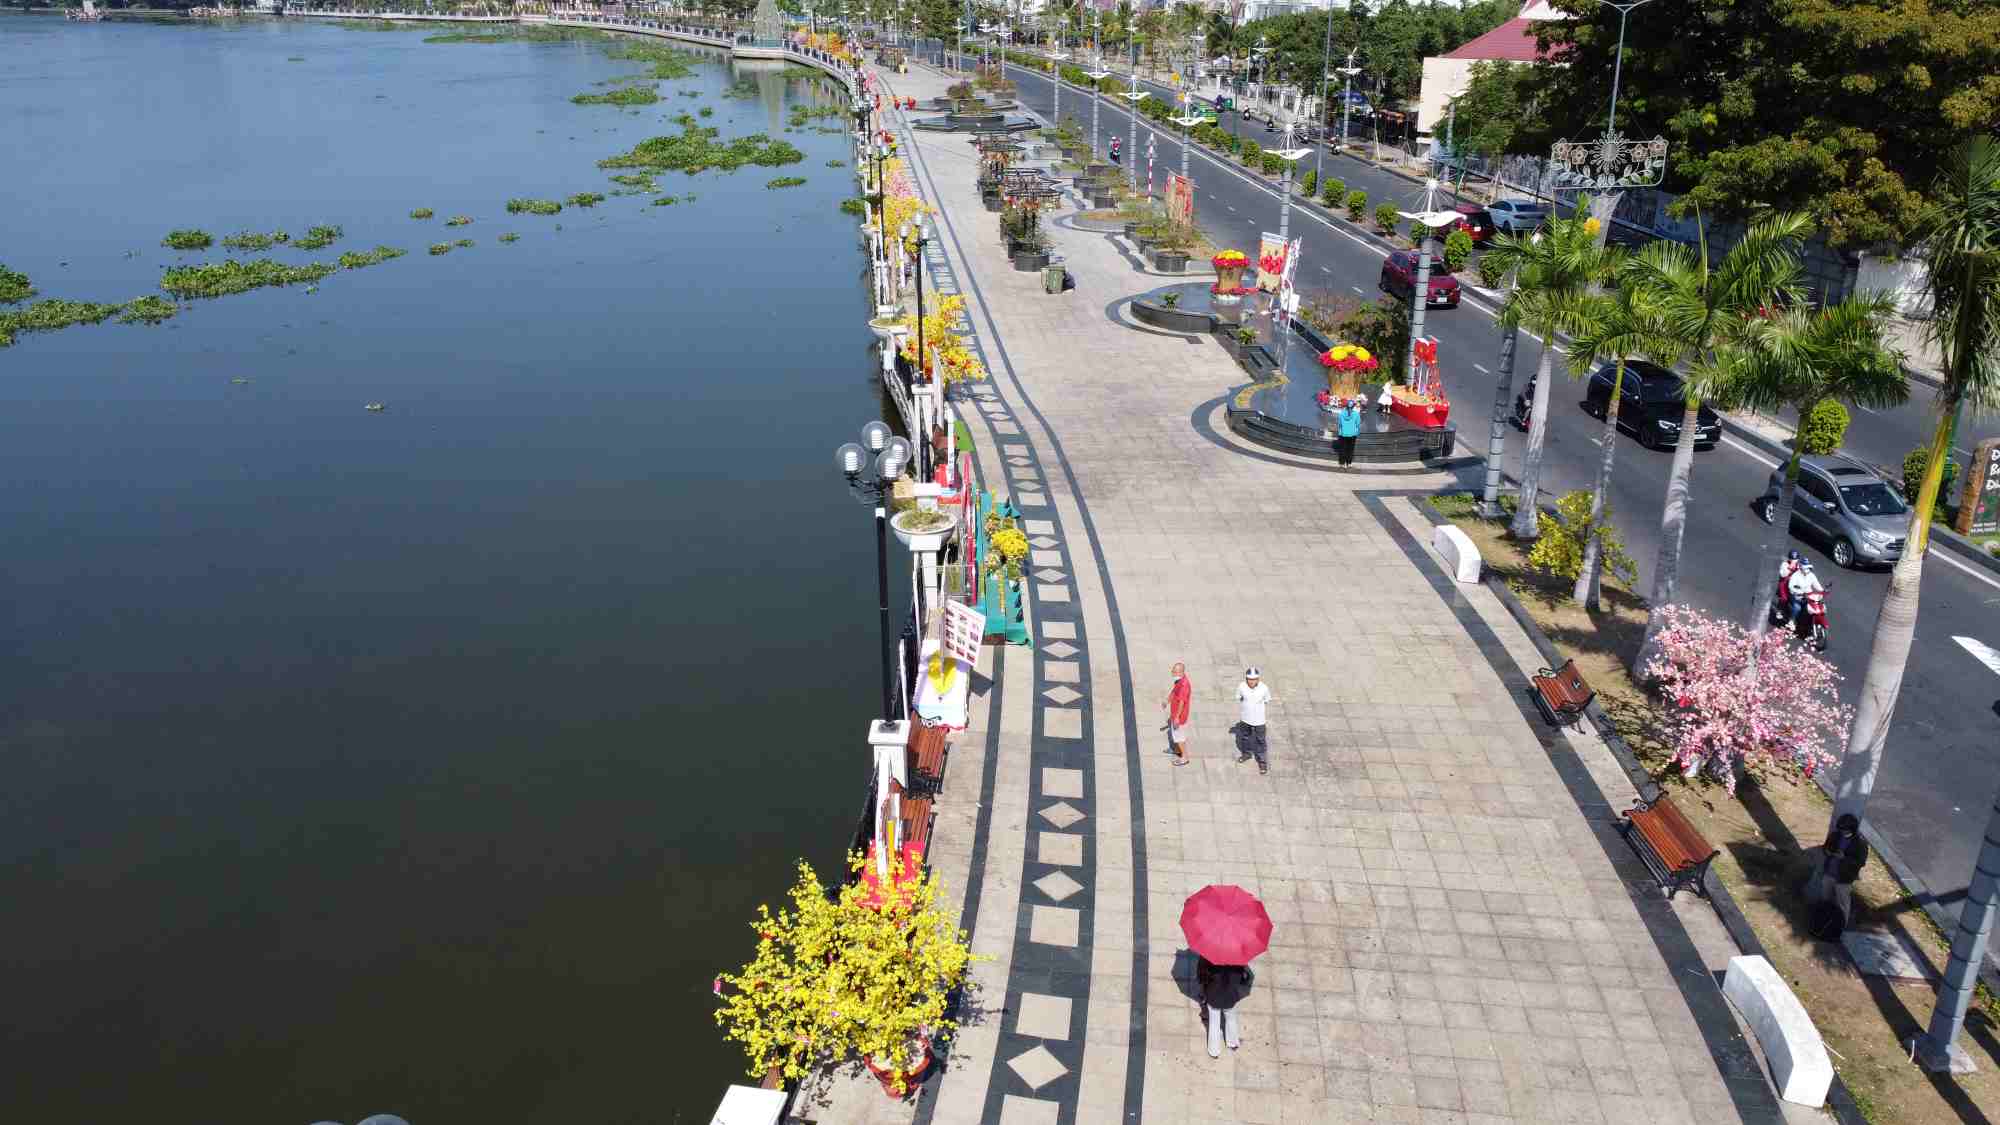 Đây là phố đi bộ Bạch Đằng (phường Phú Cường, thành phố Thủ Dầu Một, tỉnh Bình Dương). Một trong những phố đi bộ đẹp nhất tỉnh Bình Dương khi sở hưu view sông Sài Gòn hiền hòa.